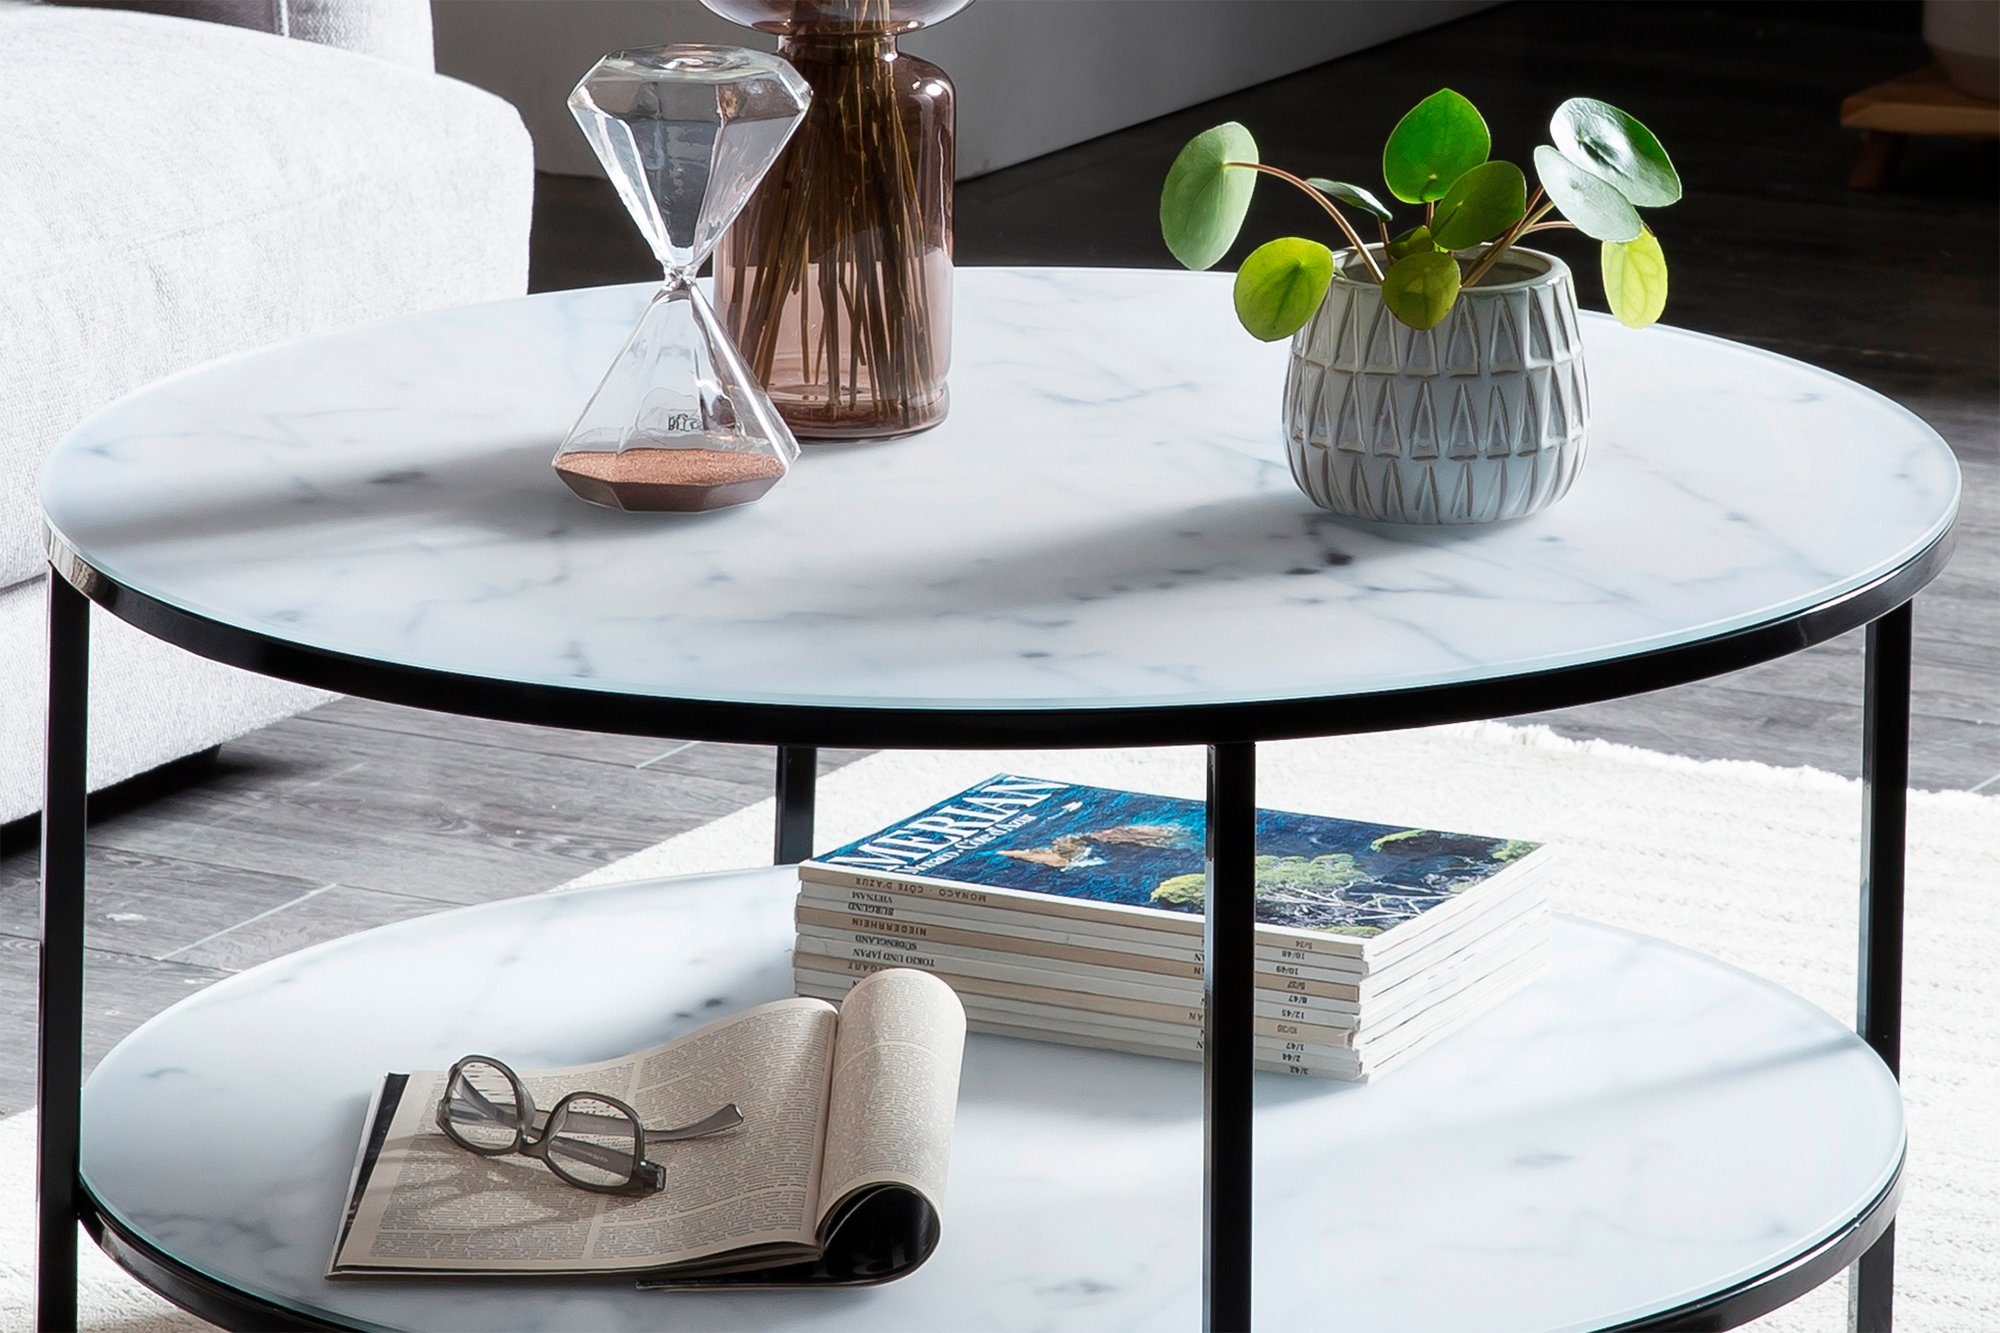 Tischplatten | Couchtisch, SalesFever Weiß/Schwarz in Schwarz Marmoroptik